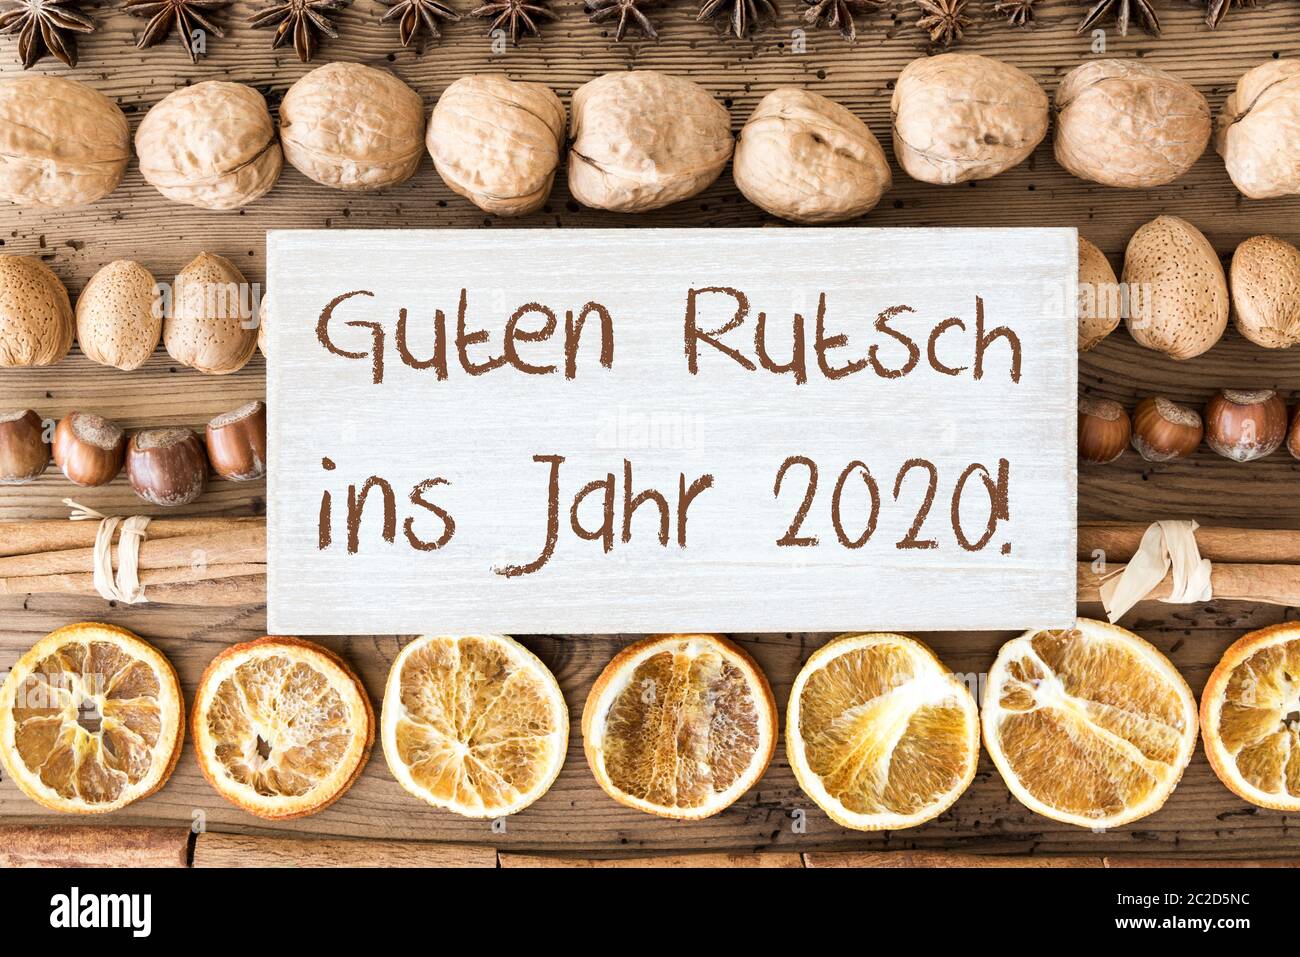 Signer avec le texte allemand Guten Rutsch ins Jahr 2020 signifie bonne année 2018. Plat de Noël avec noix, noisettes, bâtons cannelle et orange Banque D'Images